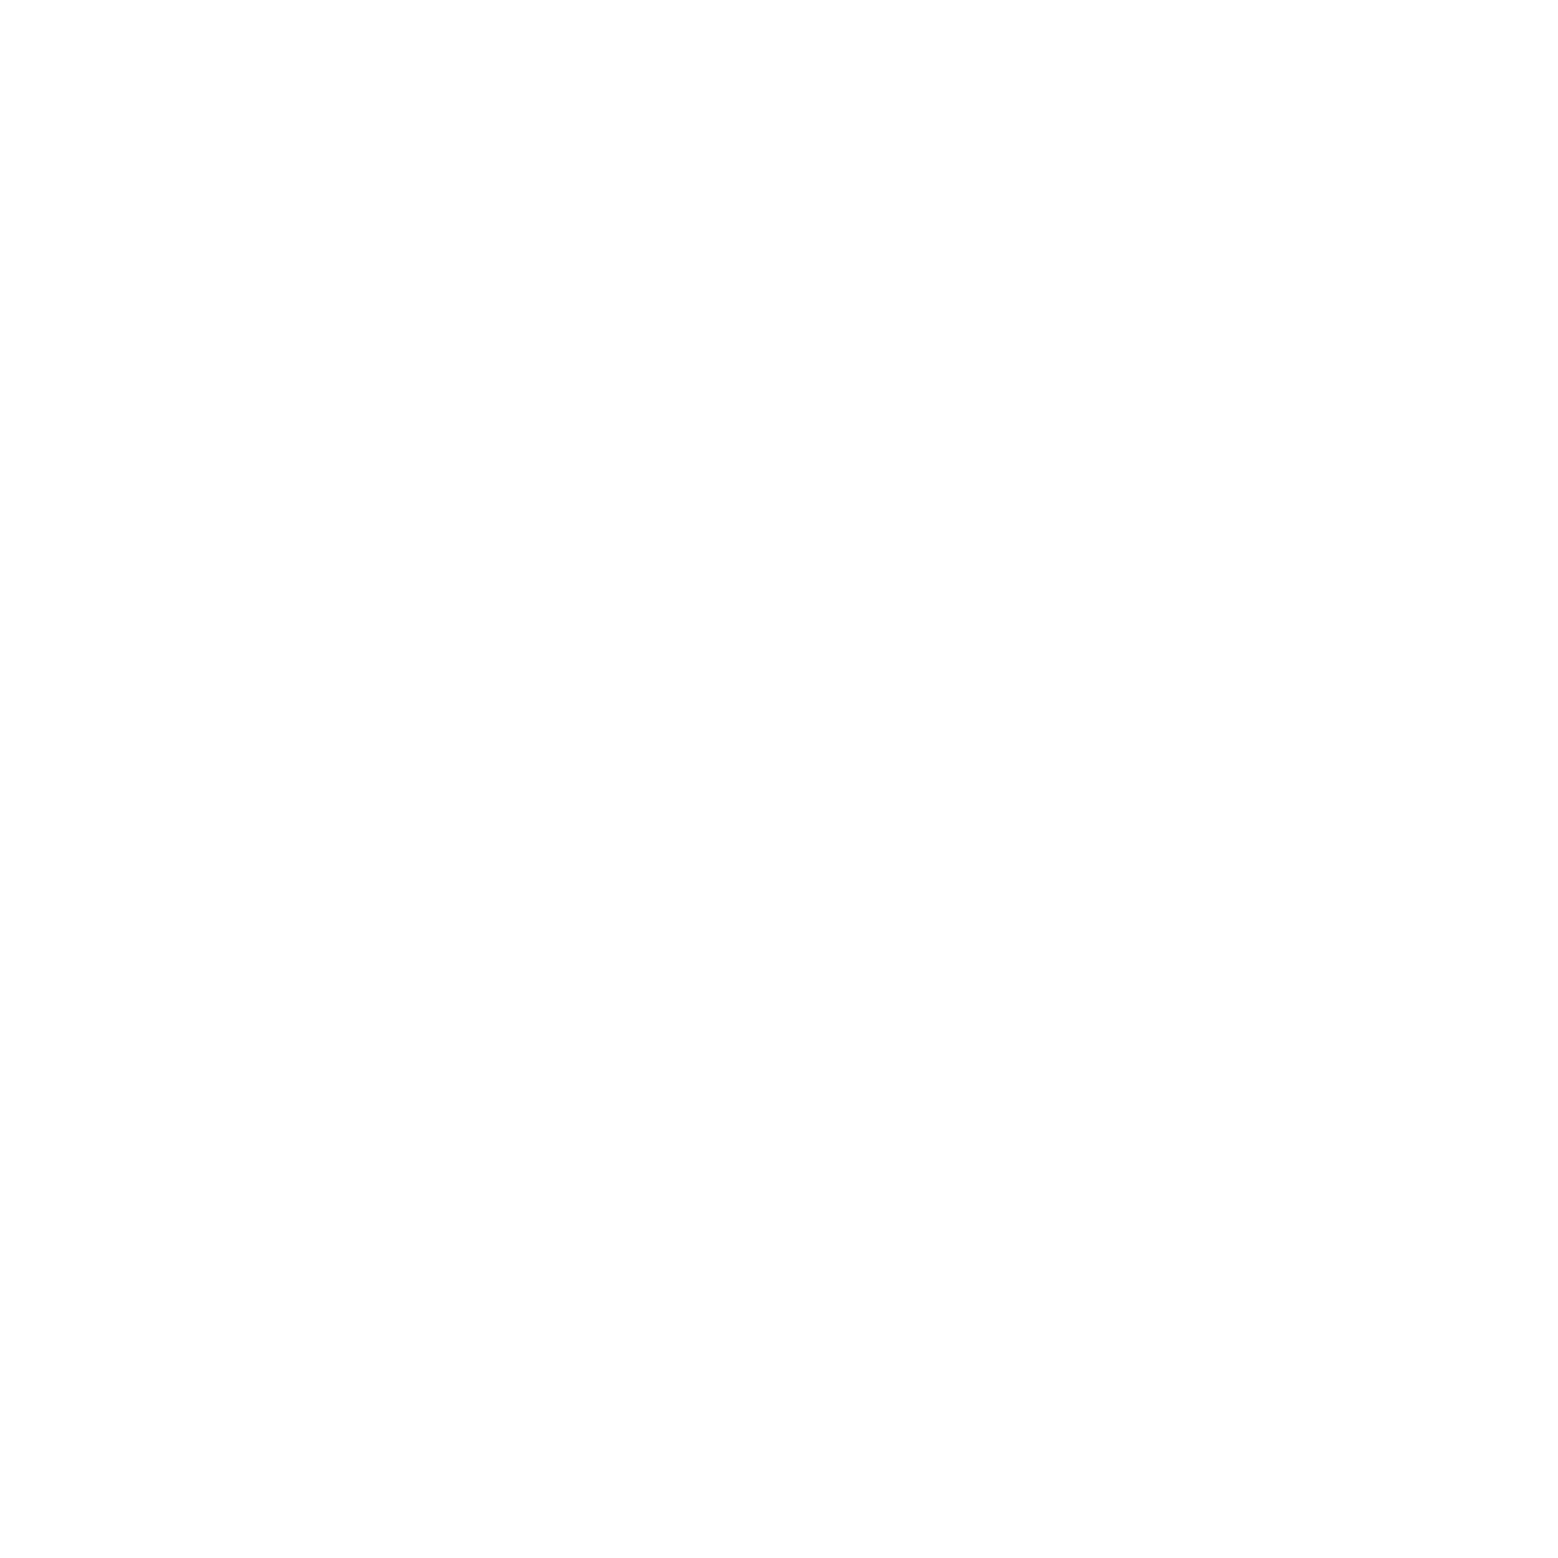 Kingnet Network logo for dark backgrounds (transparent PNG)